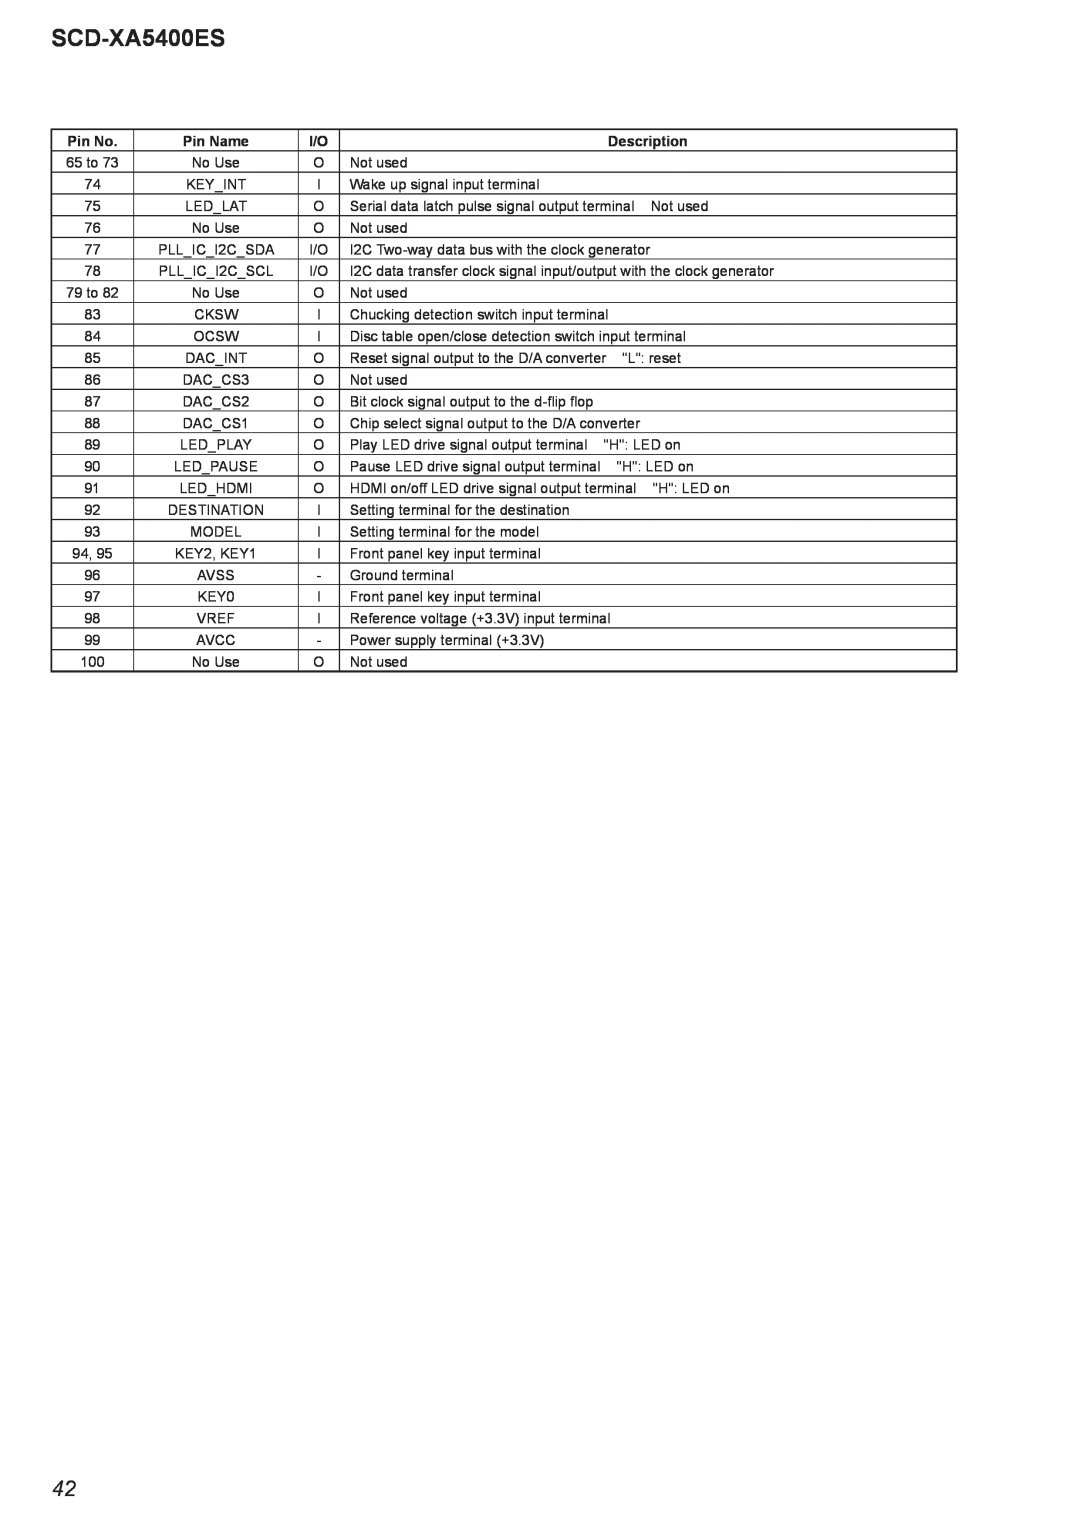 Sony SCD-XA5400ES, 2008H05-1 service manual Pin No, Pin Name, Description, 65 to 